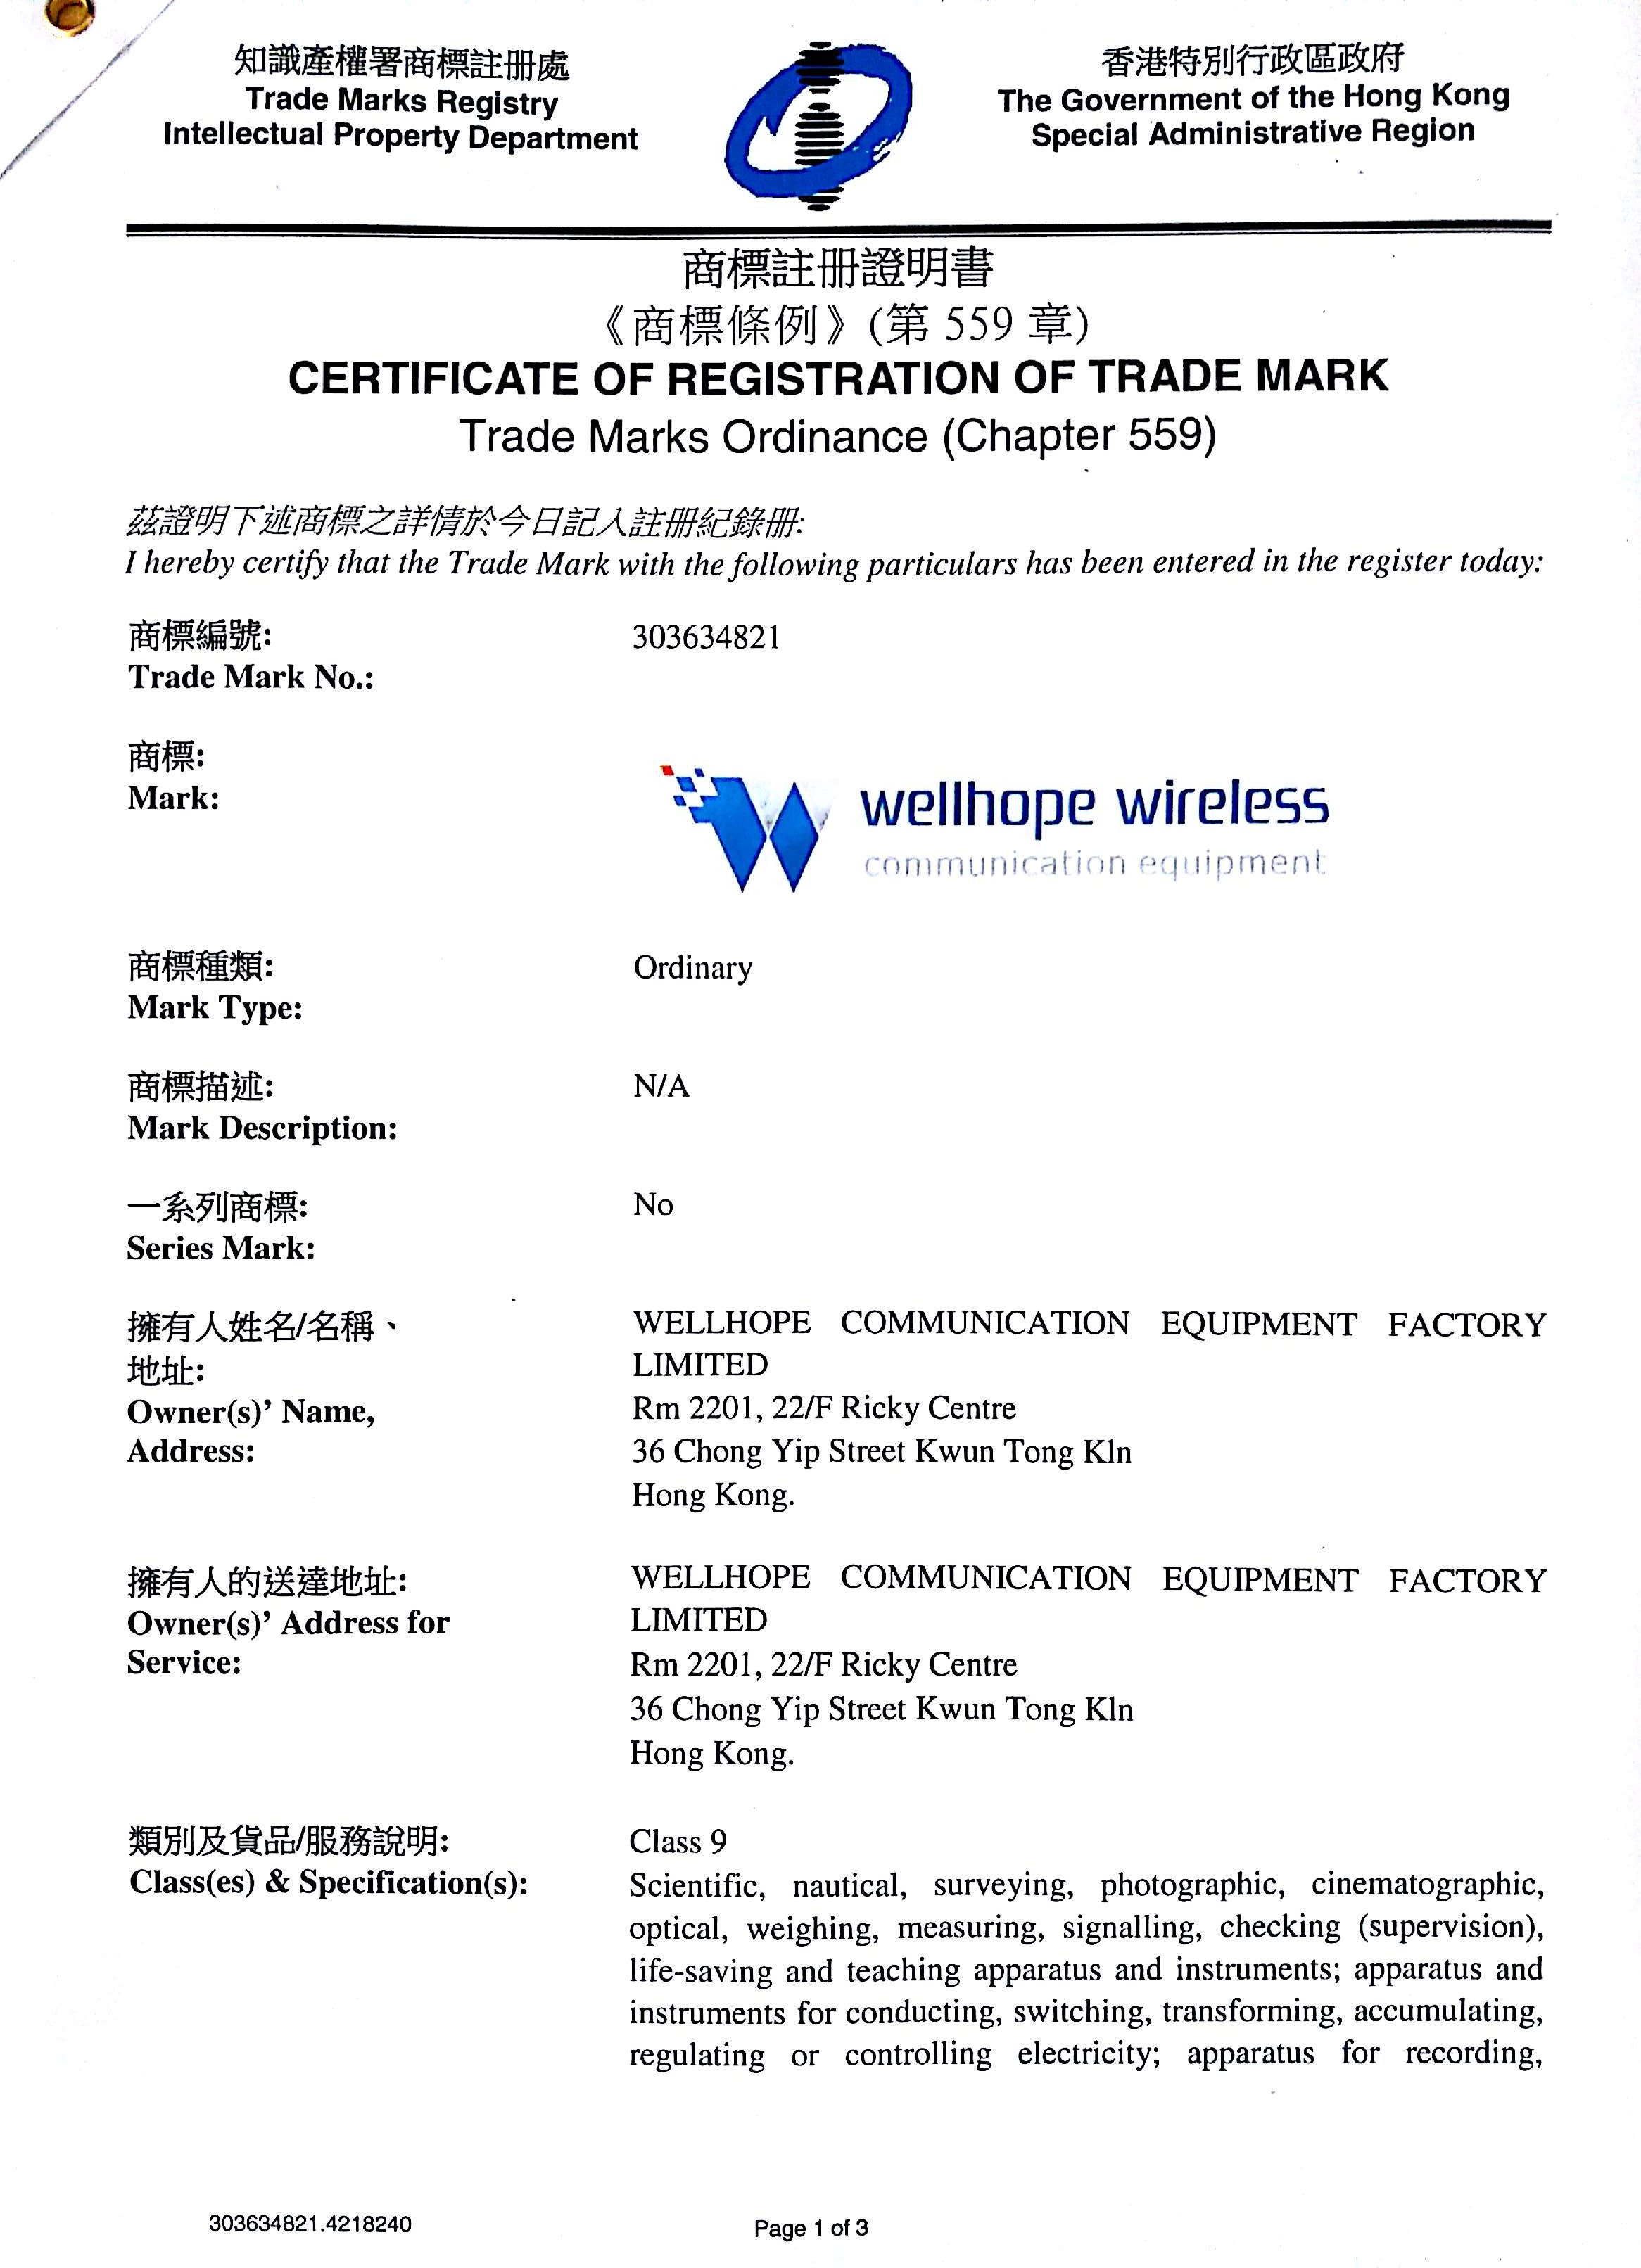 wellhope wireless trademark heeft geregistreerd